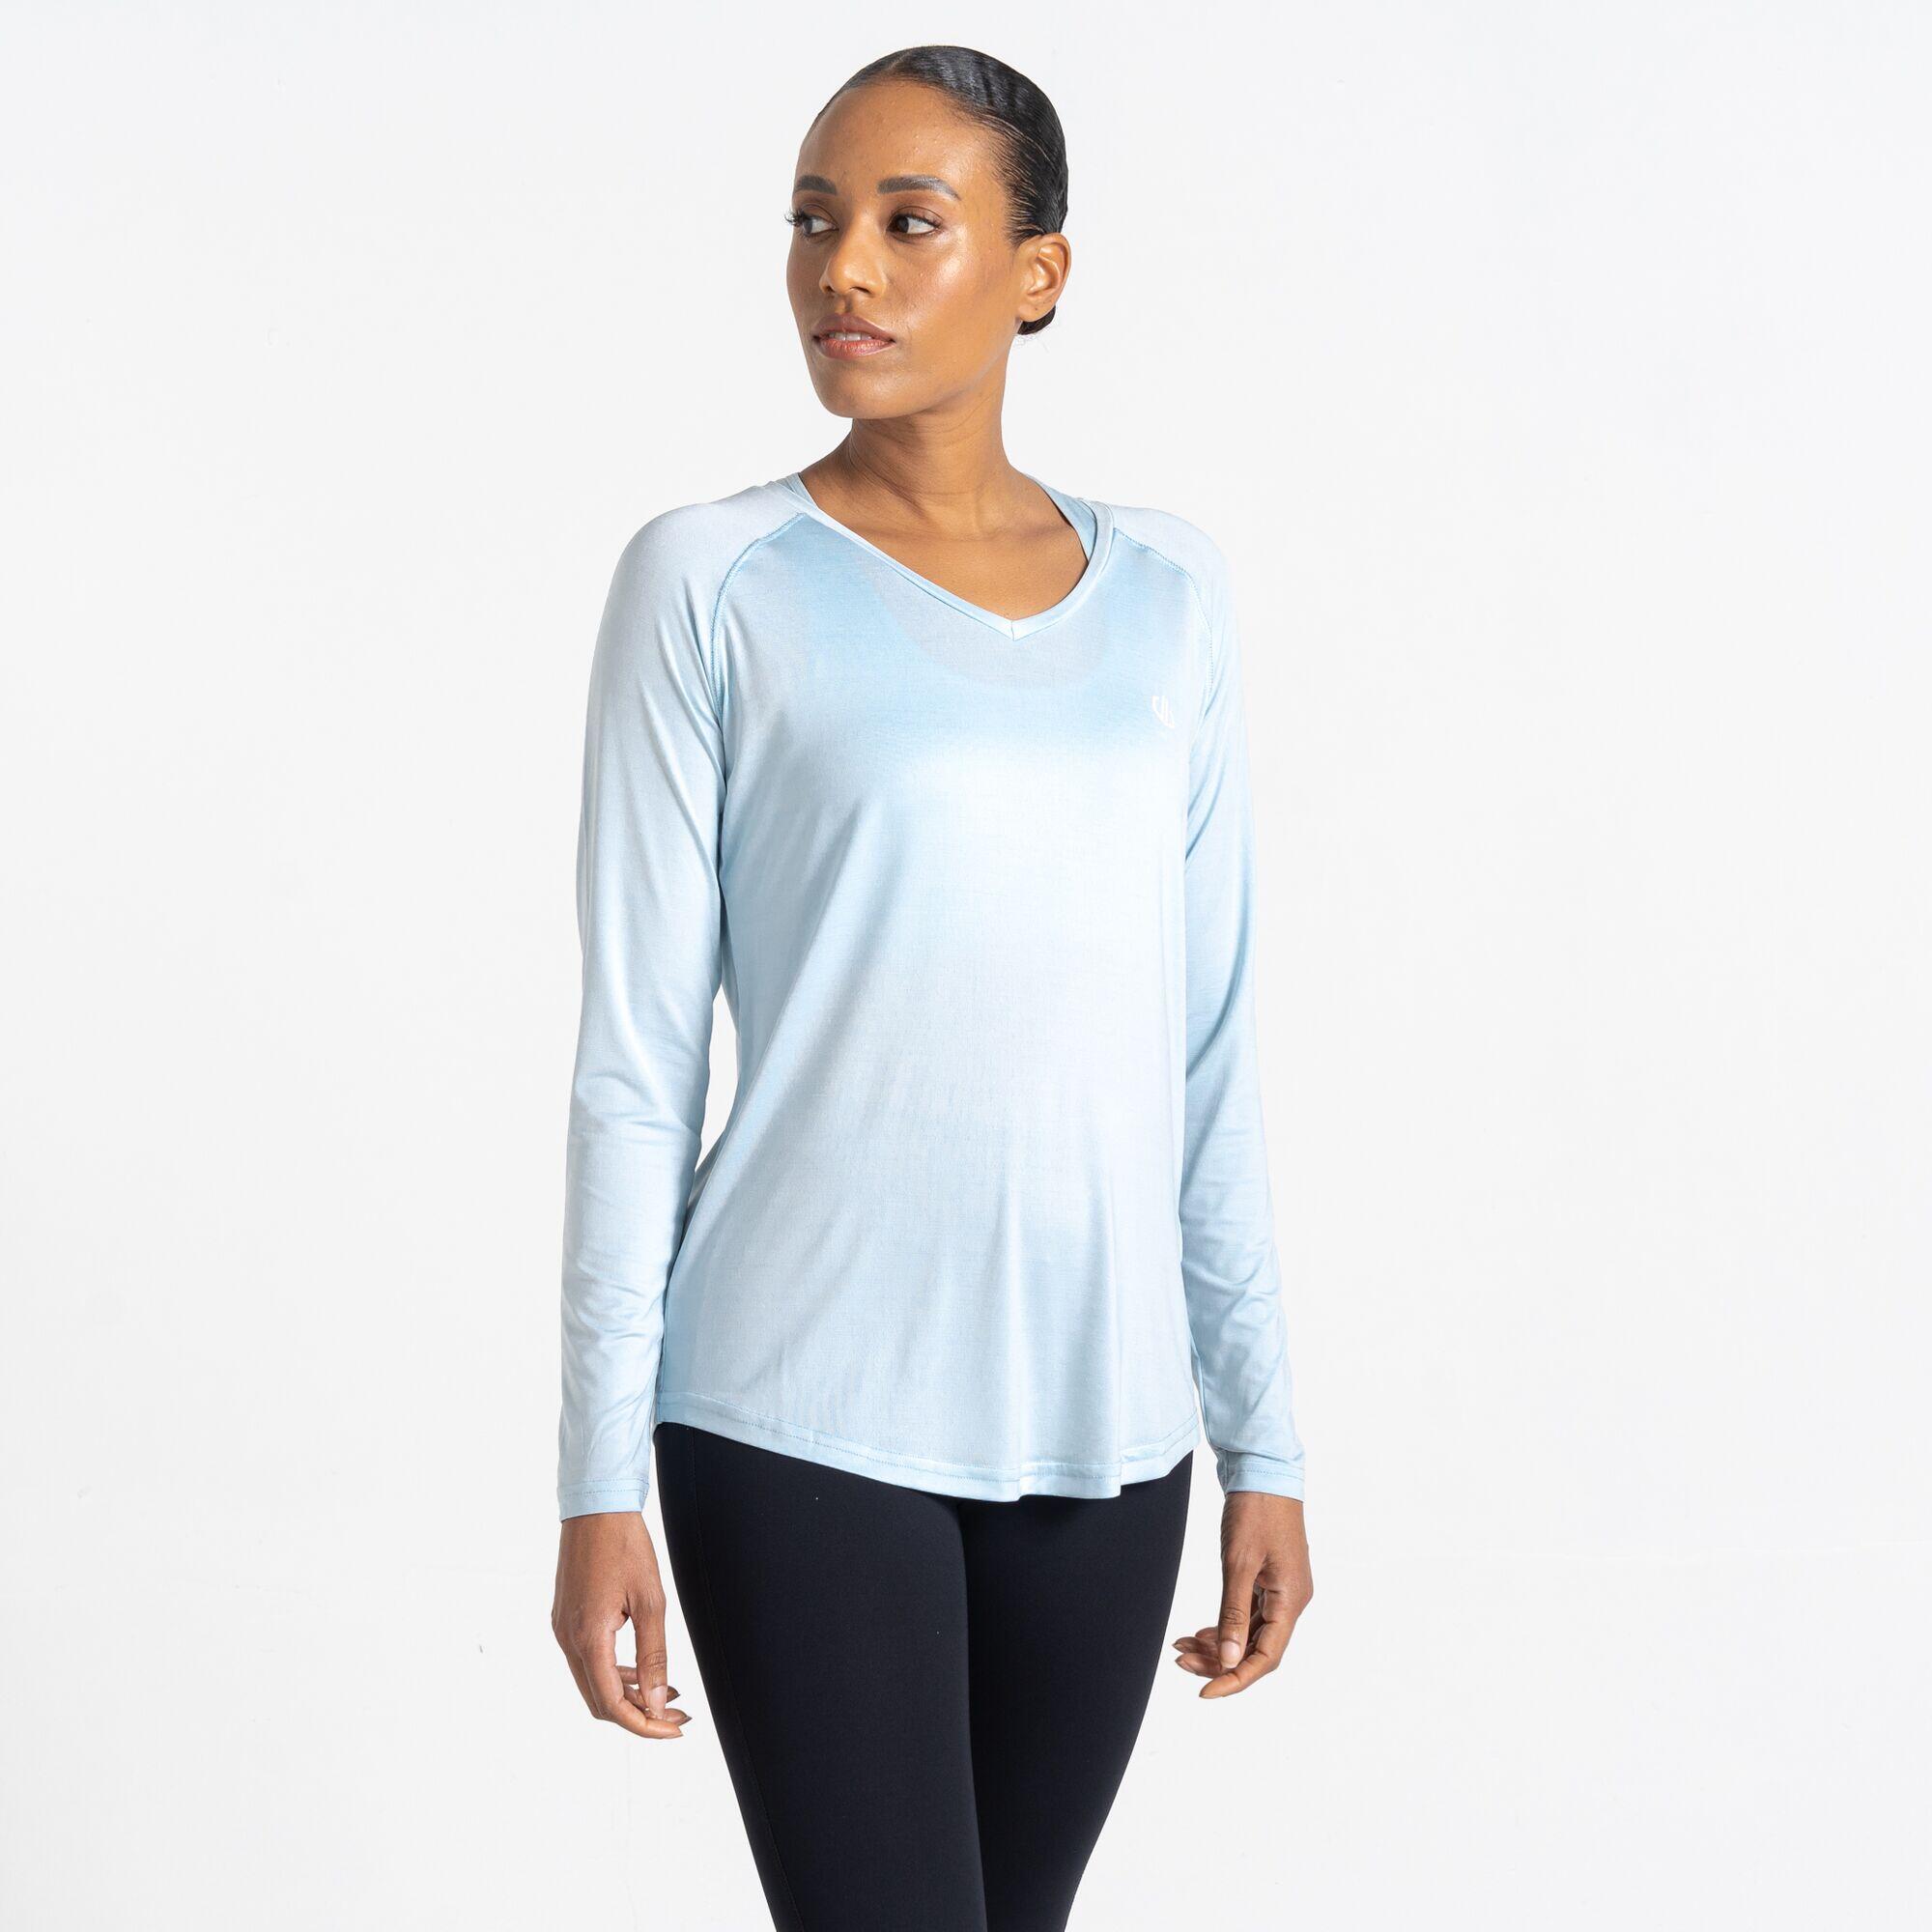 Discern Women's Running Long Sleeve T-Shirt 1/5